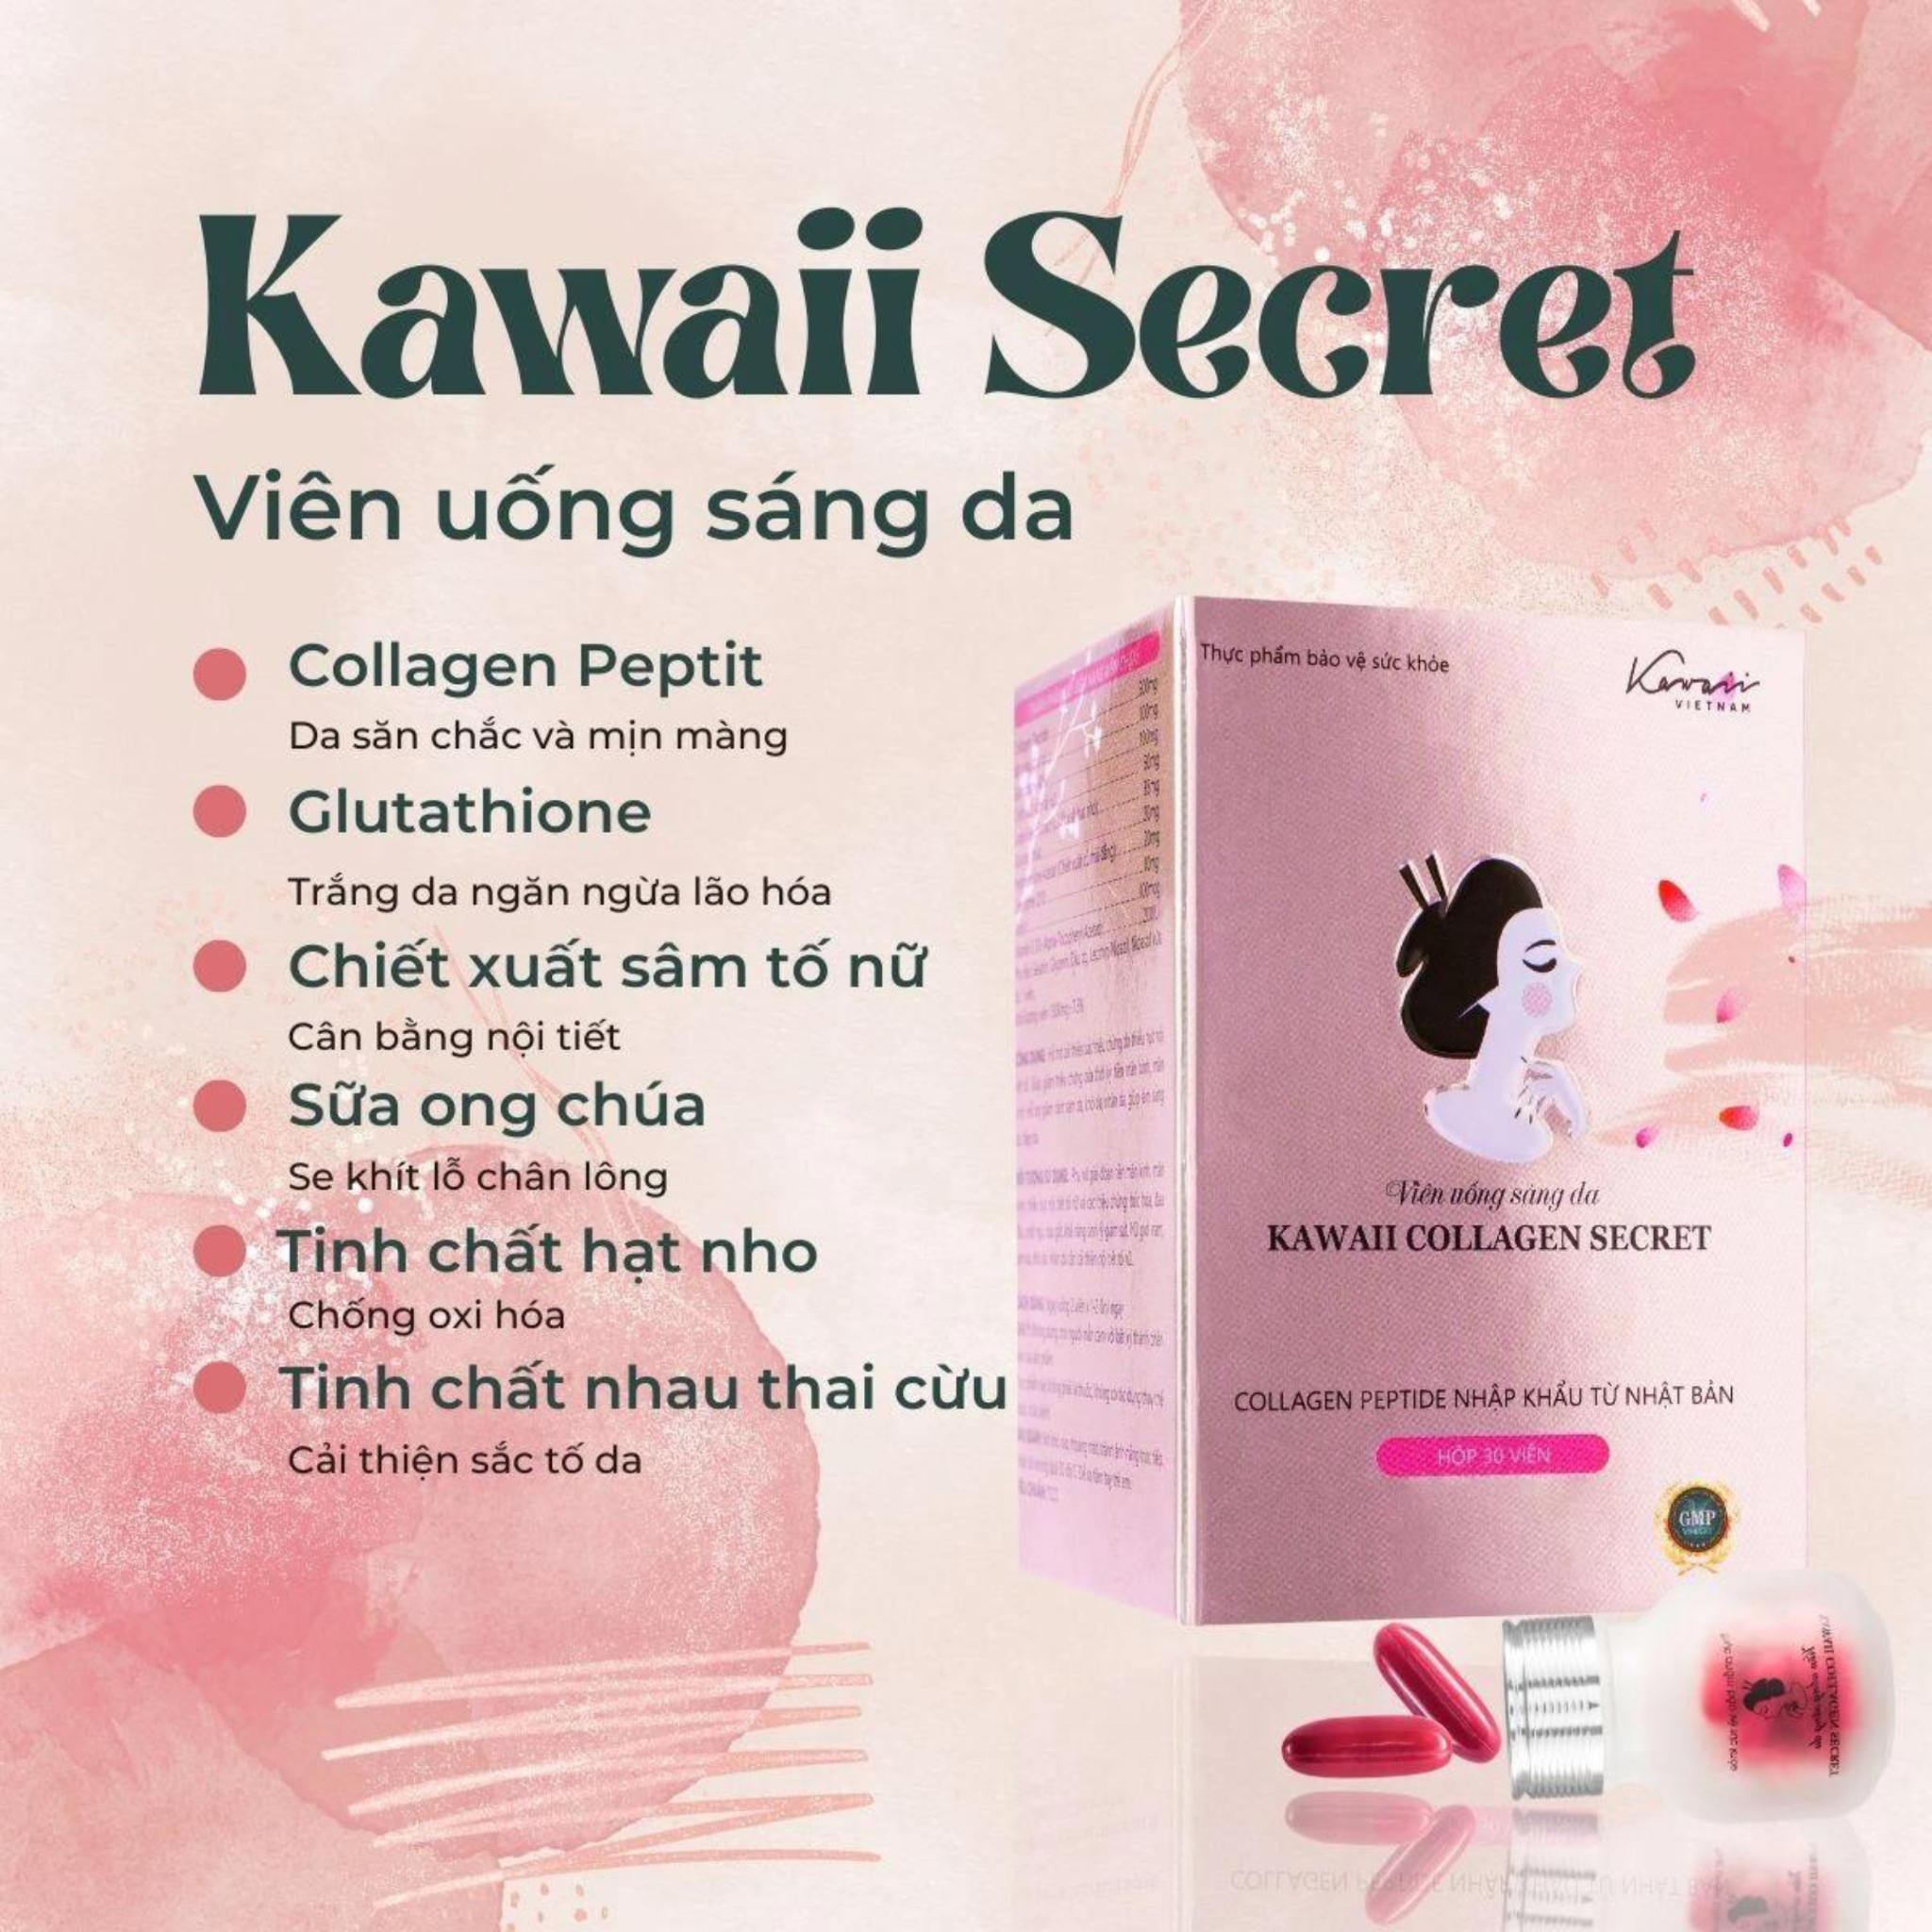 Hiệu quả của kawaii collagen secret được đánh giá rất cao